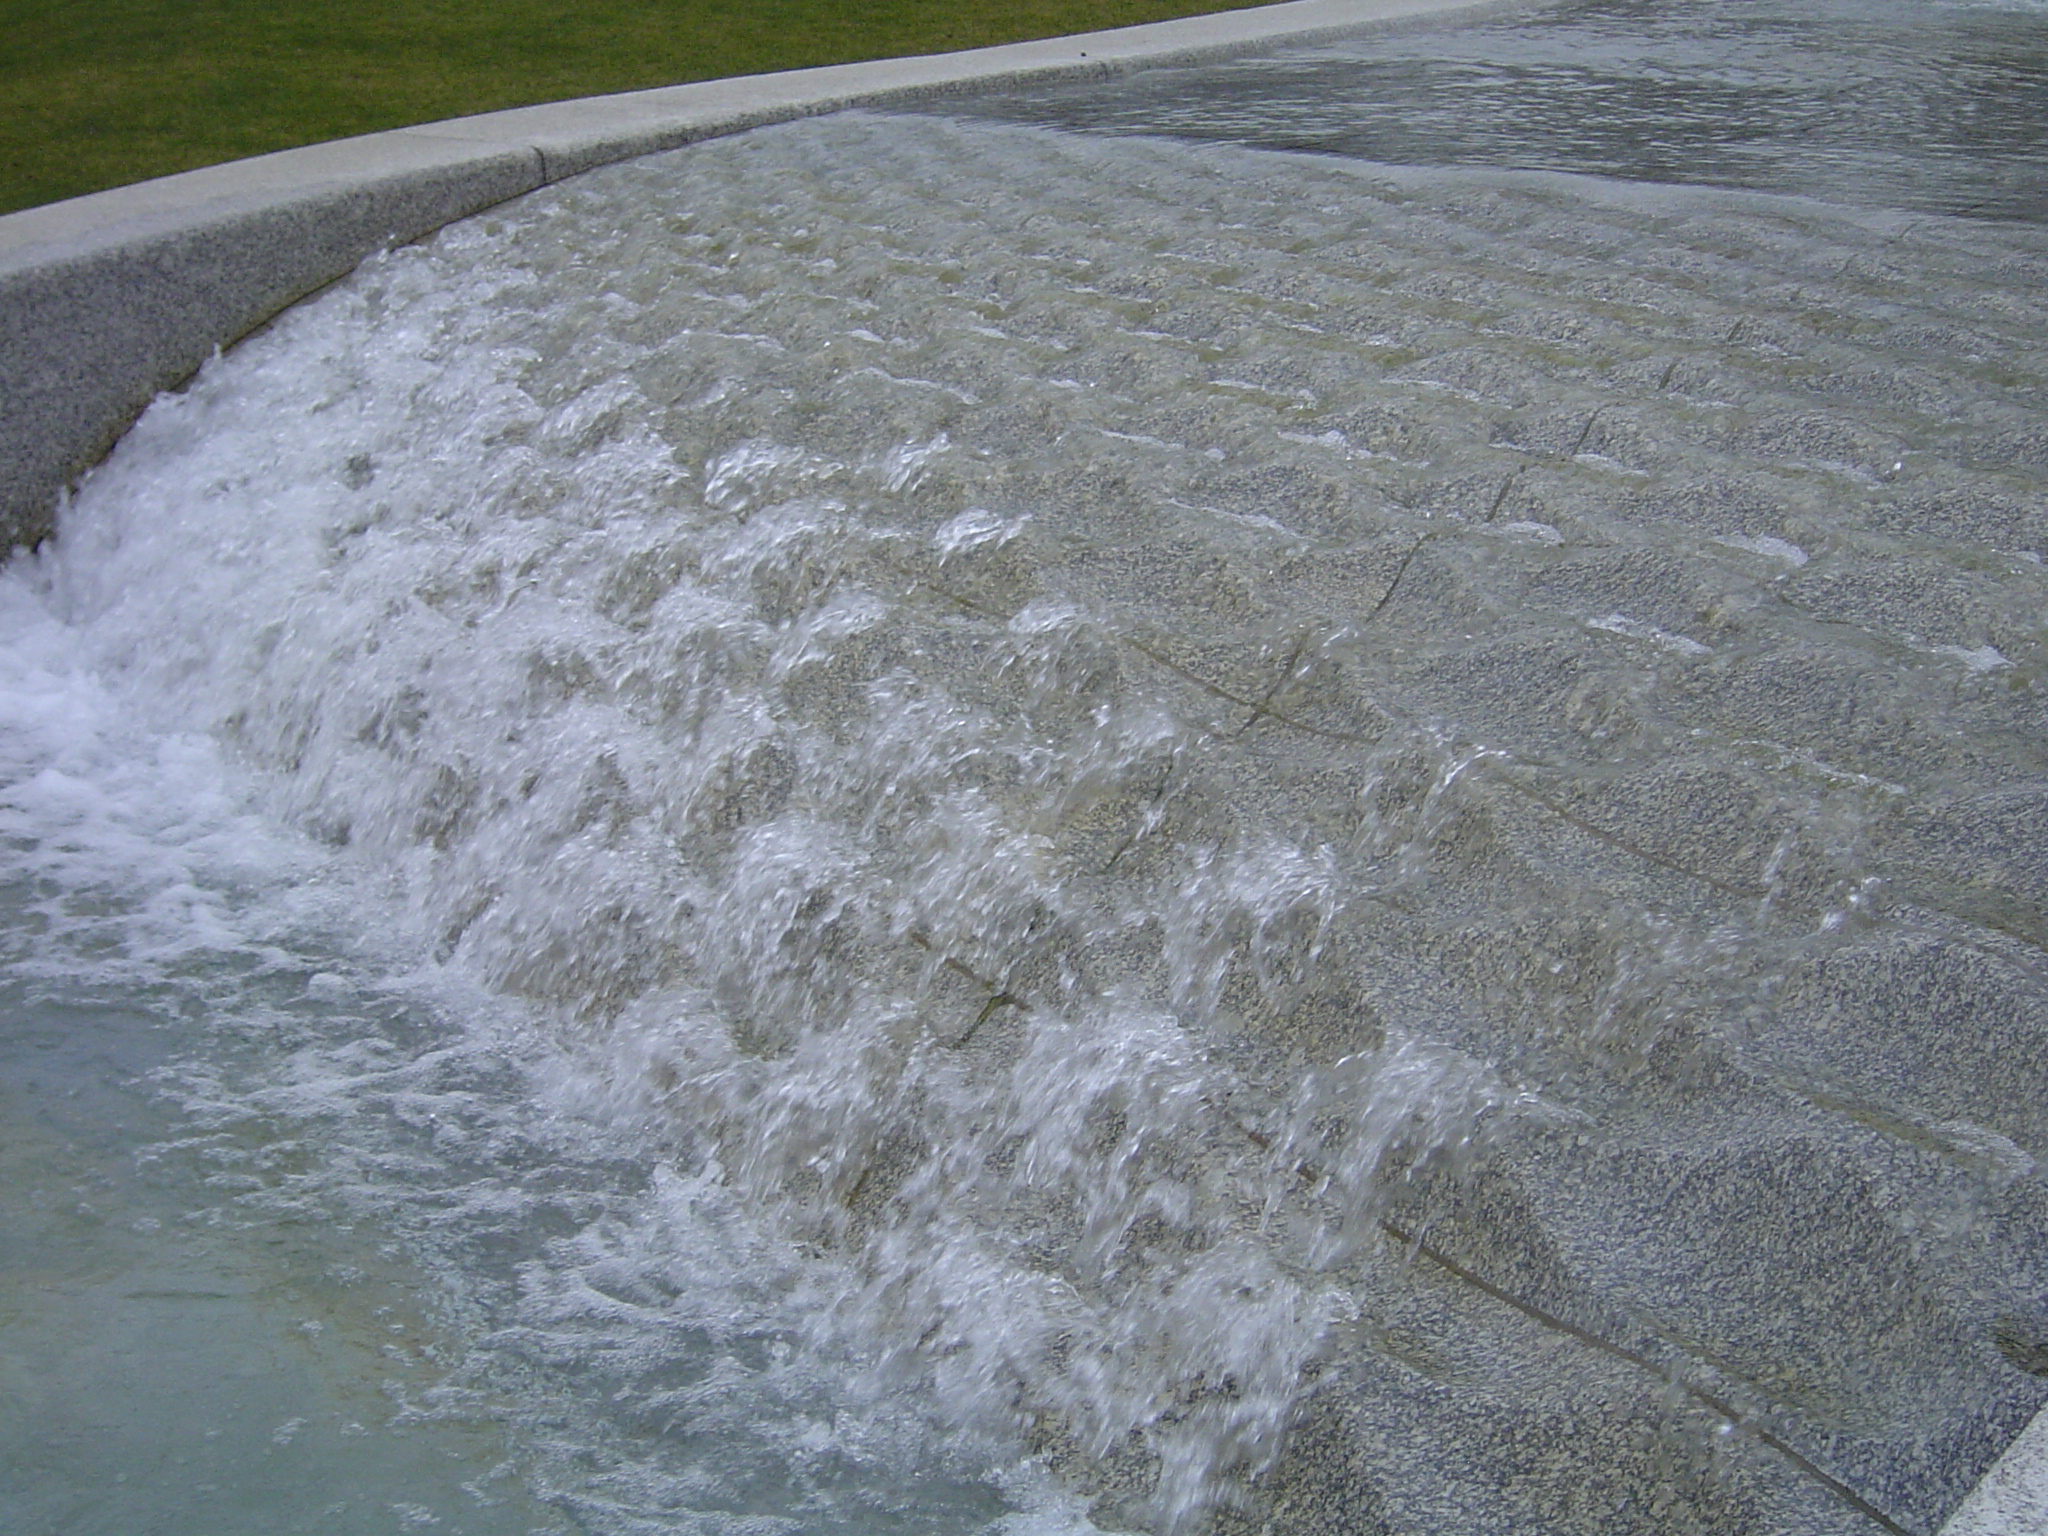 Water of Princess Diana Memorial